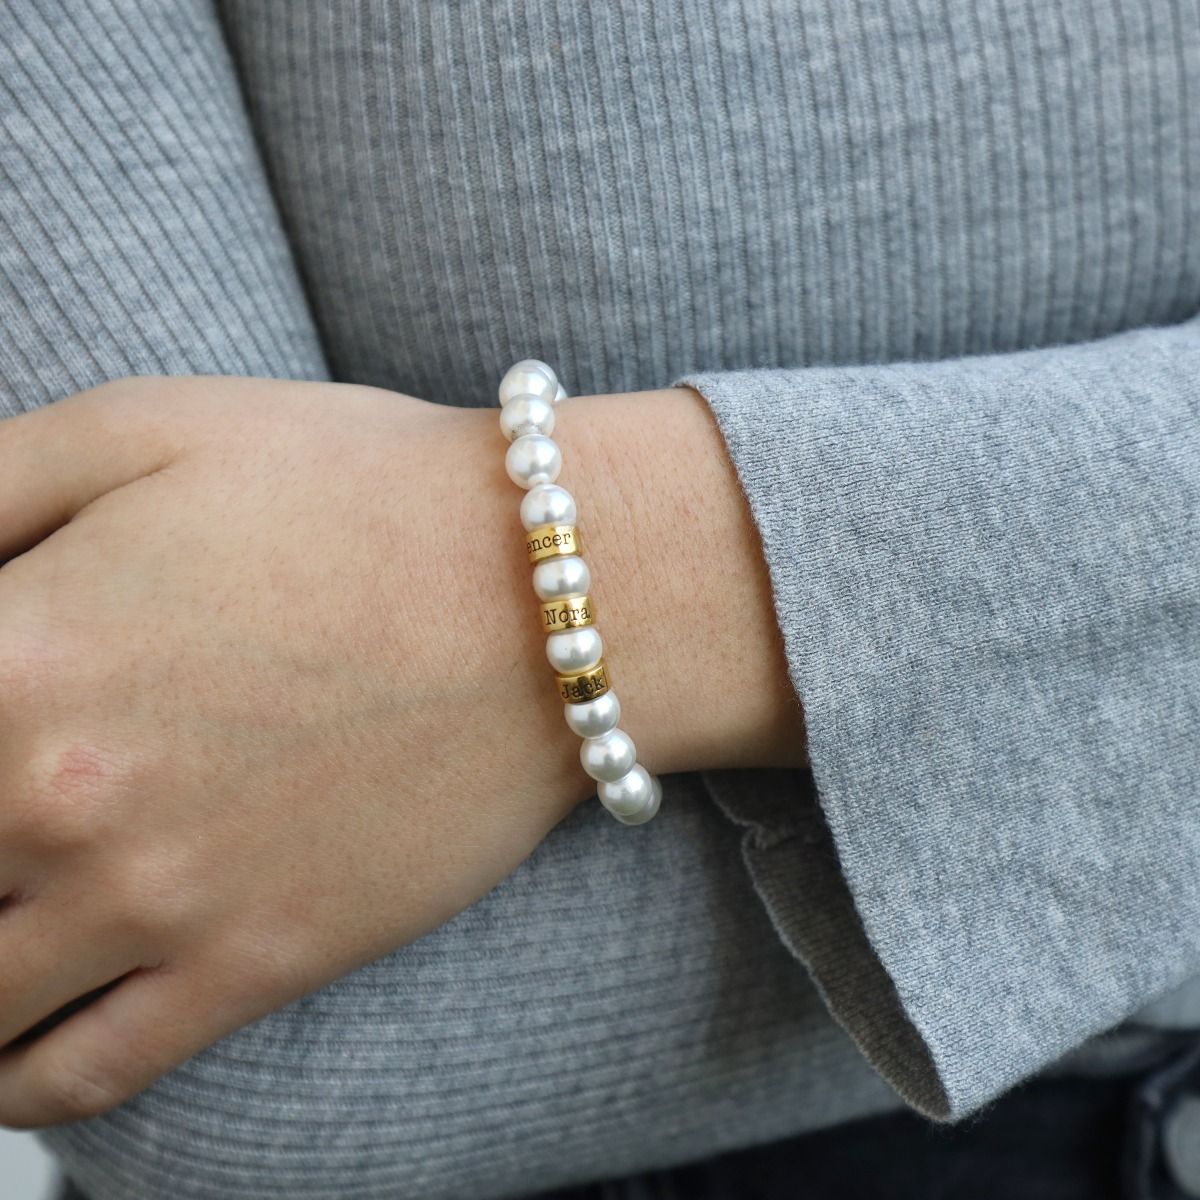 Bracelet élastique perles en vermeil plaqué or 18 carats - Perle